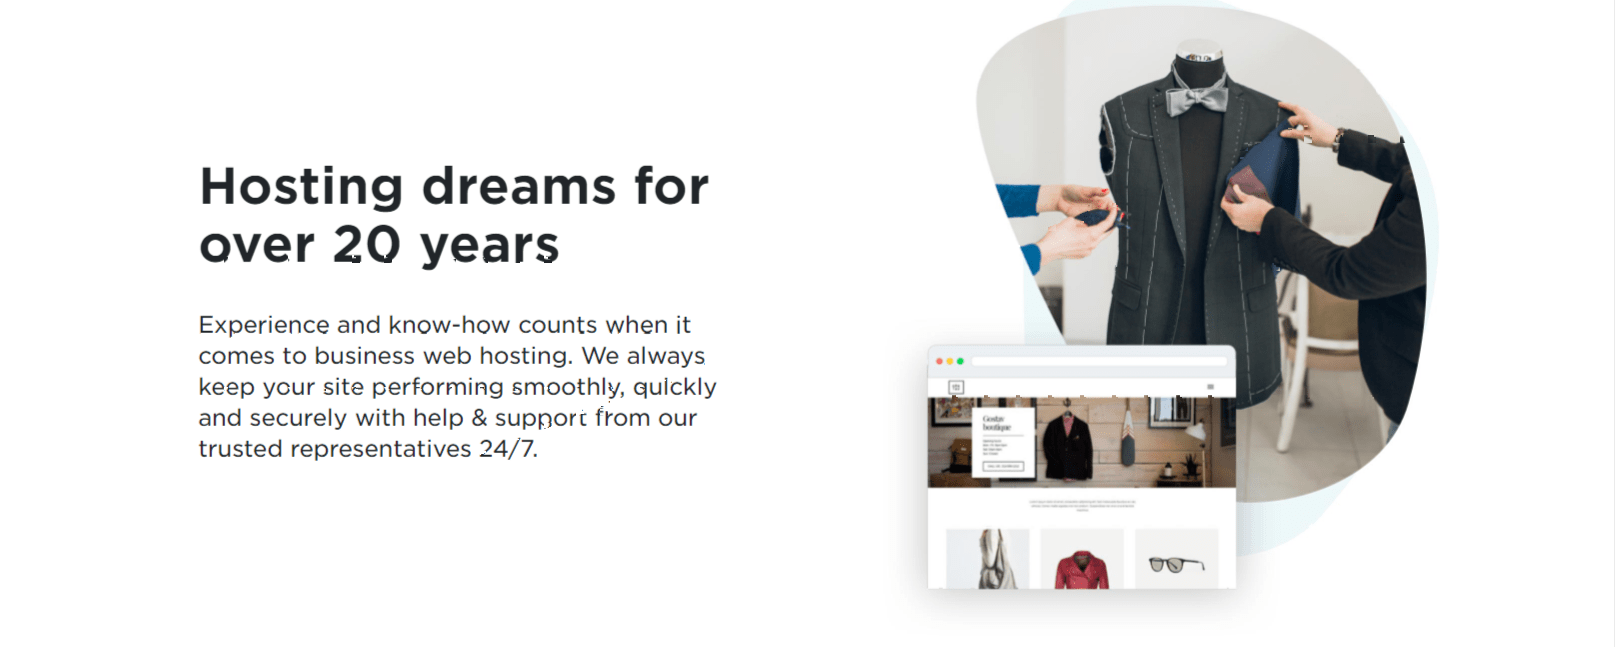 Hosting Dreams- Yahoo hosting review